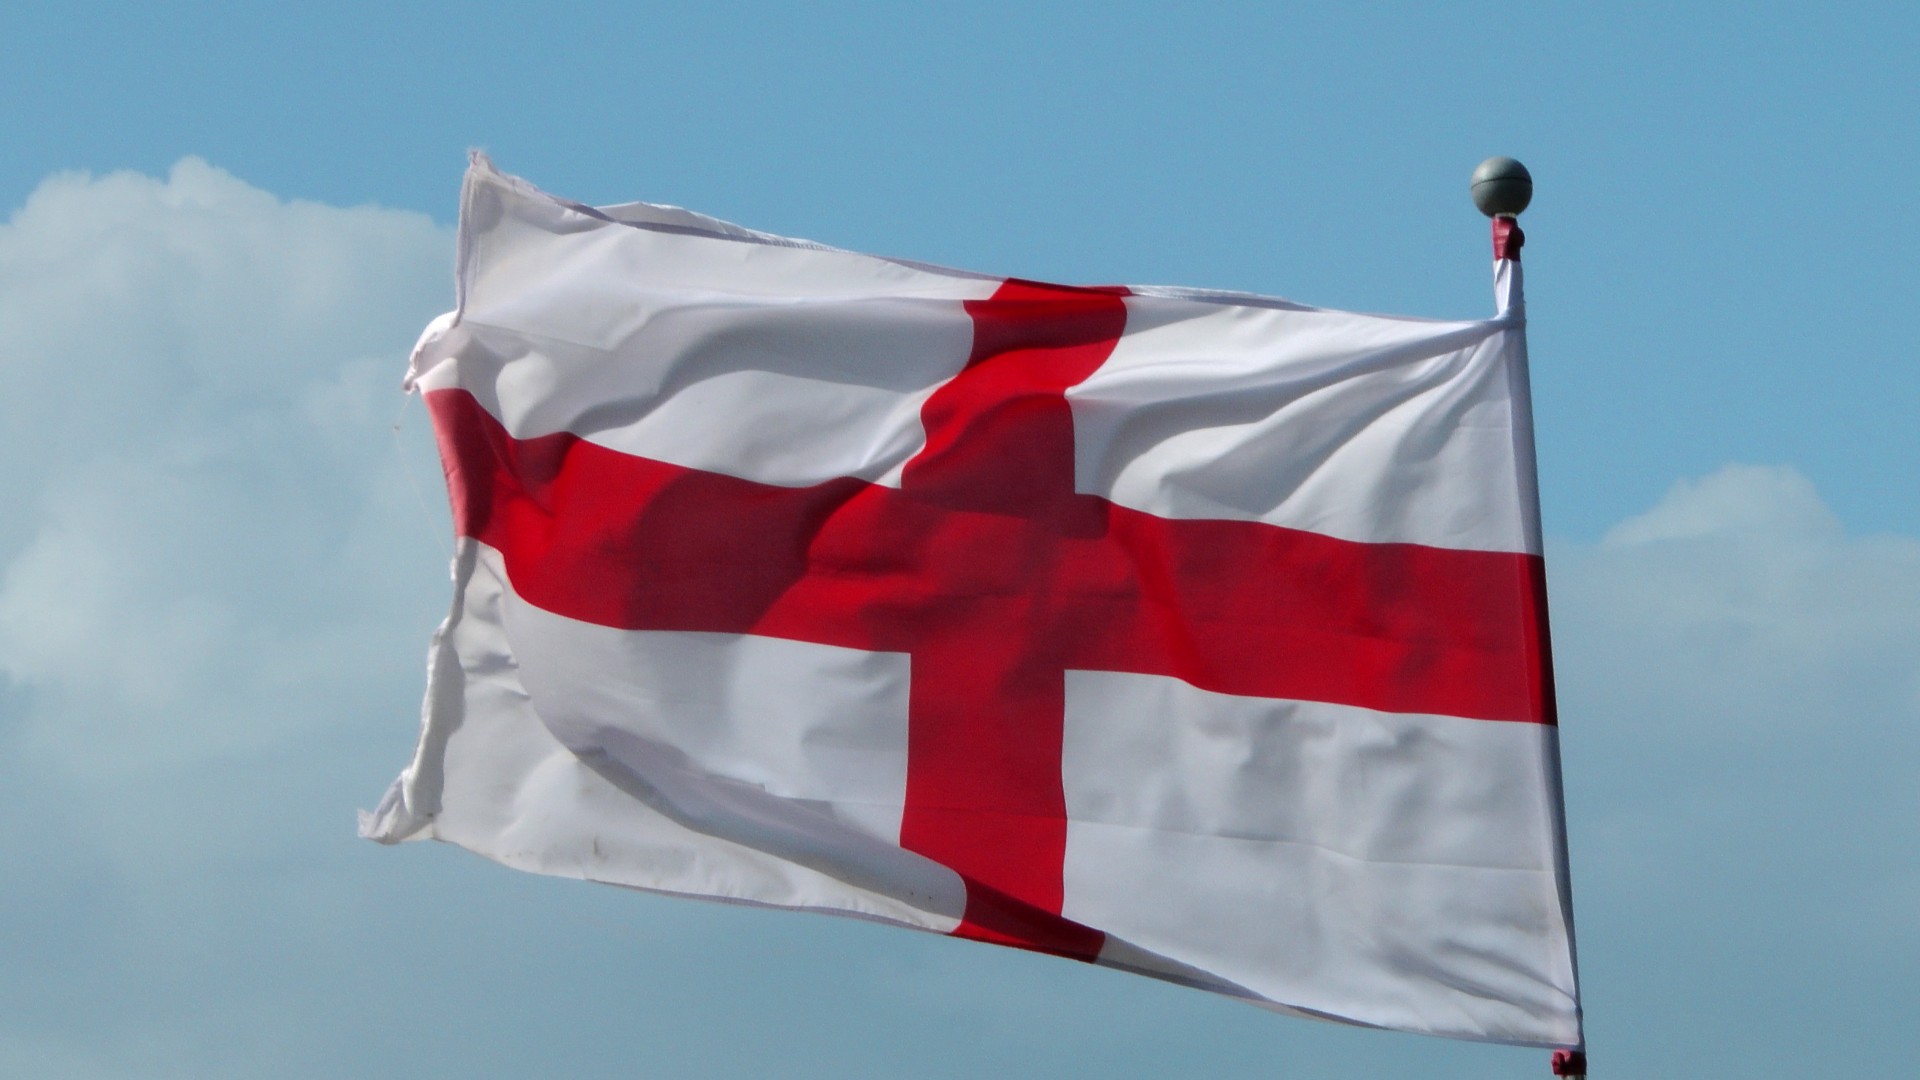 La bandiera inglese: una storia che ha origine in Italia